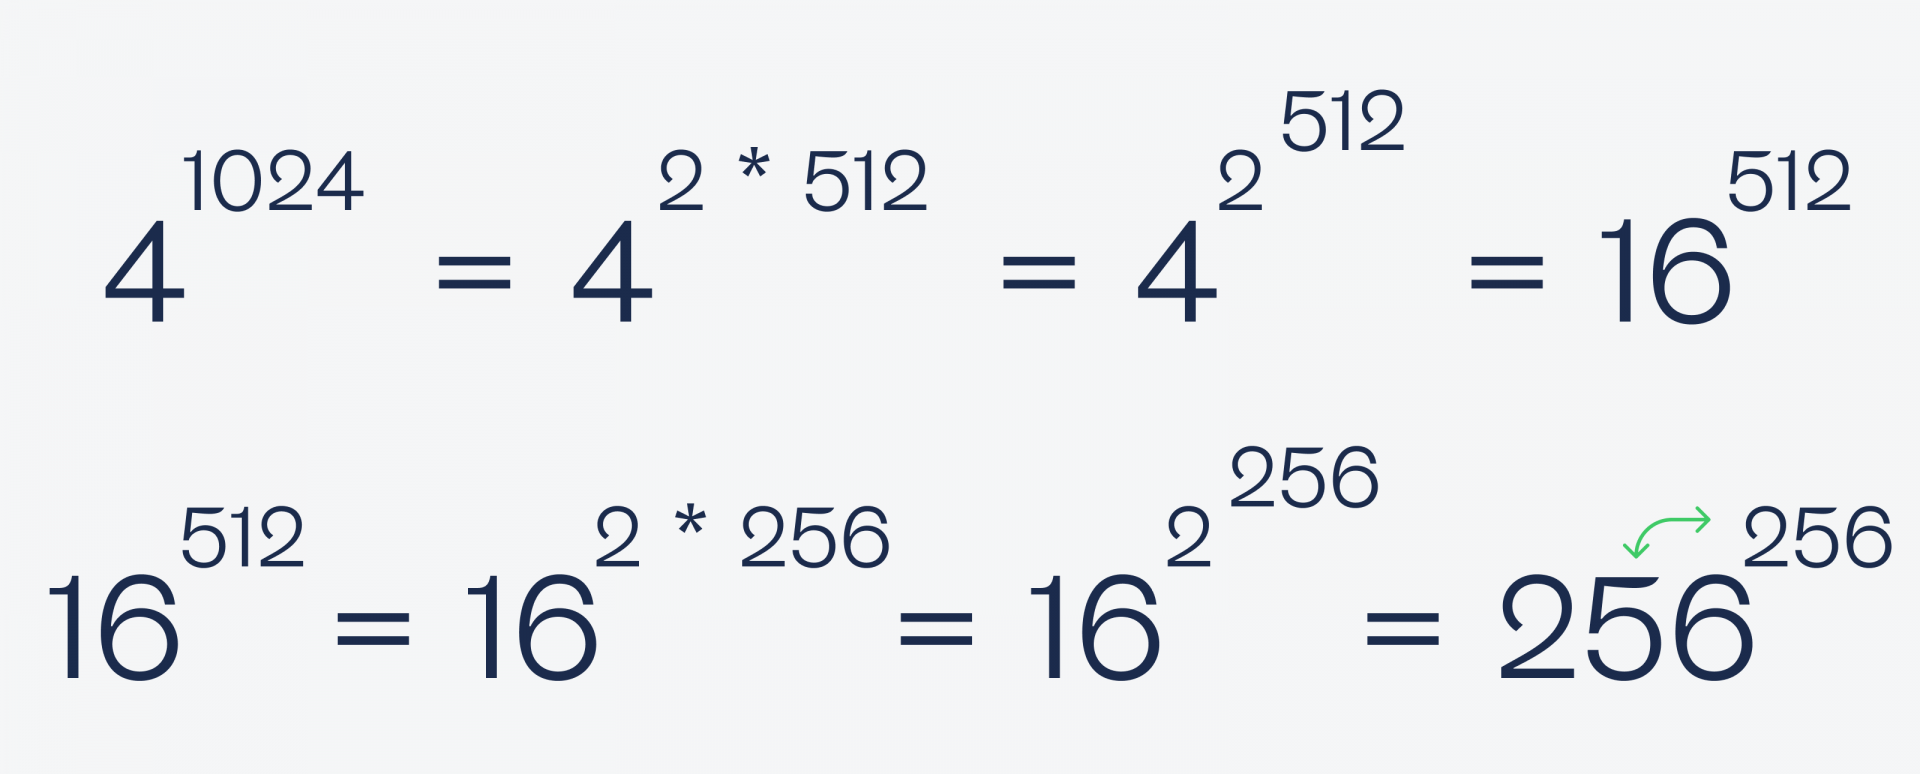 Сборник простых задач по математике, которые кажутся сложными